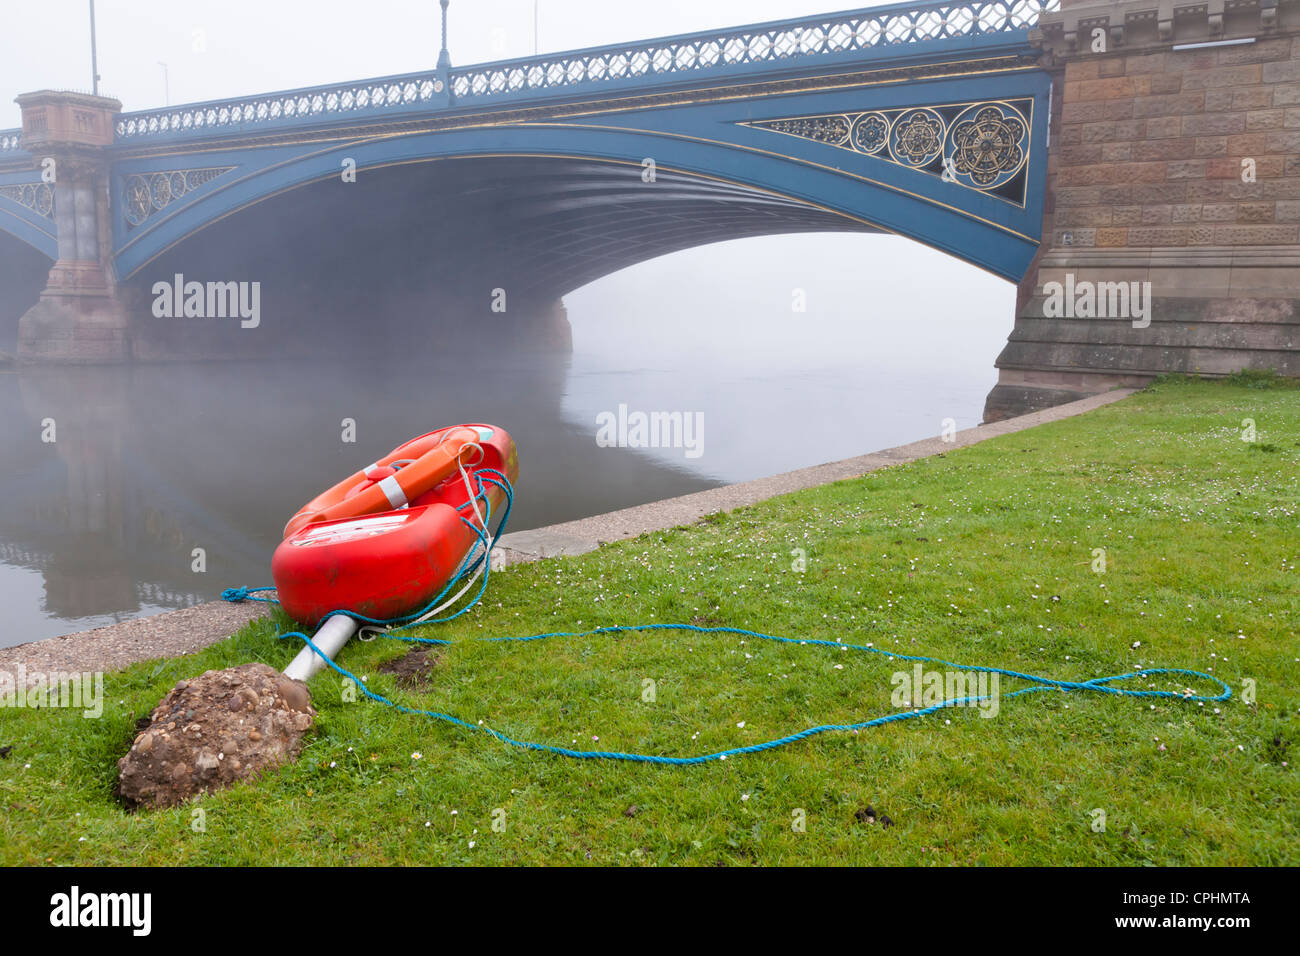 Le vandalisme de l'équipement de sécurité. Une bouée vandalisée par la rivière Trent, Lancashire, England, UK Banque D'Images